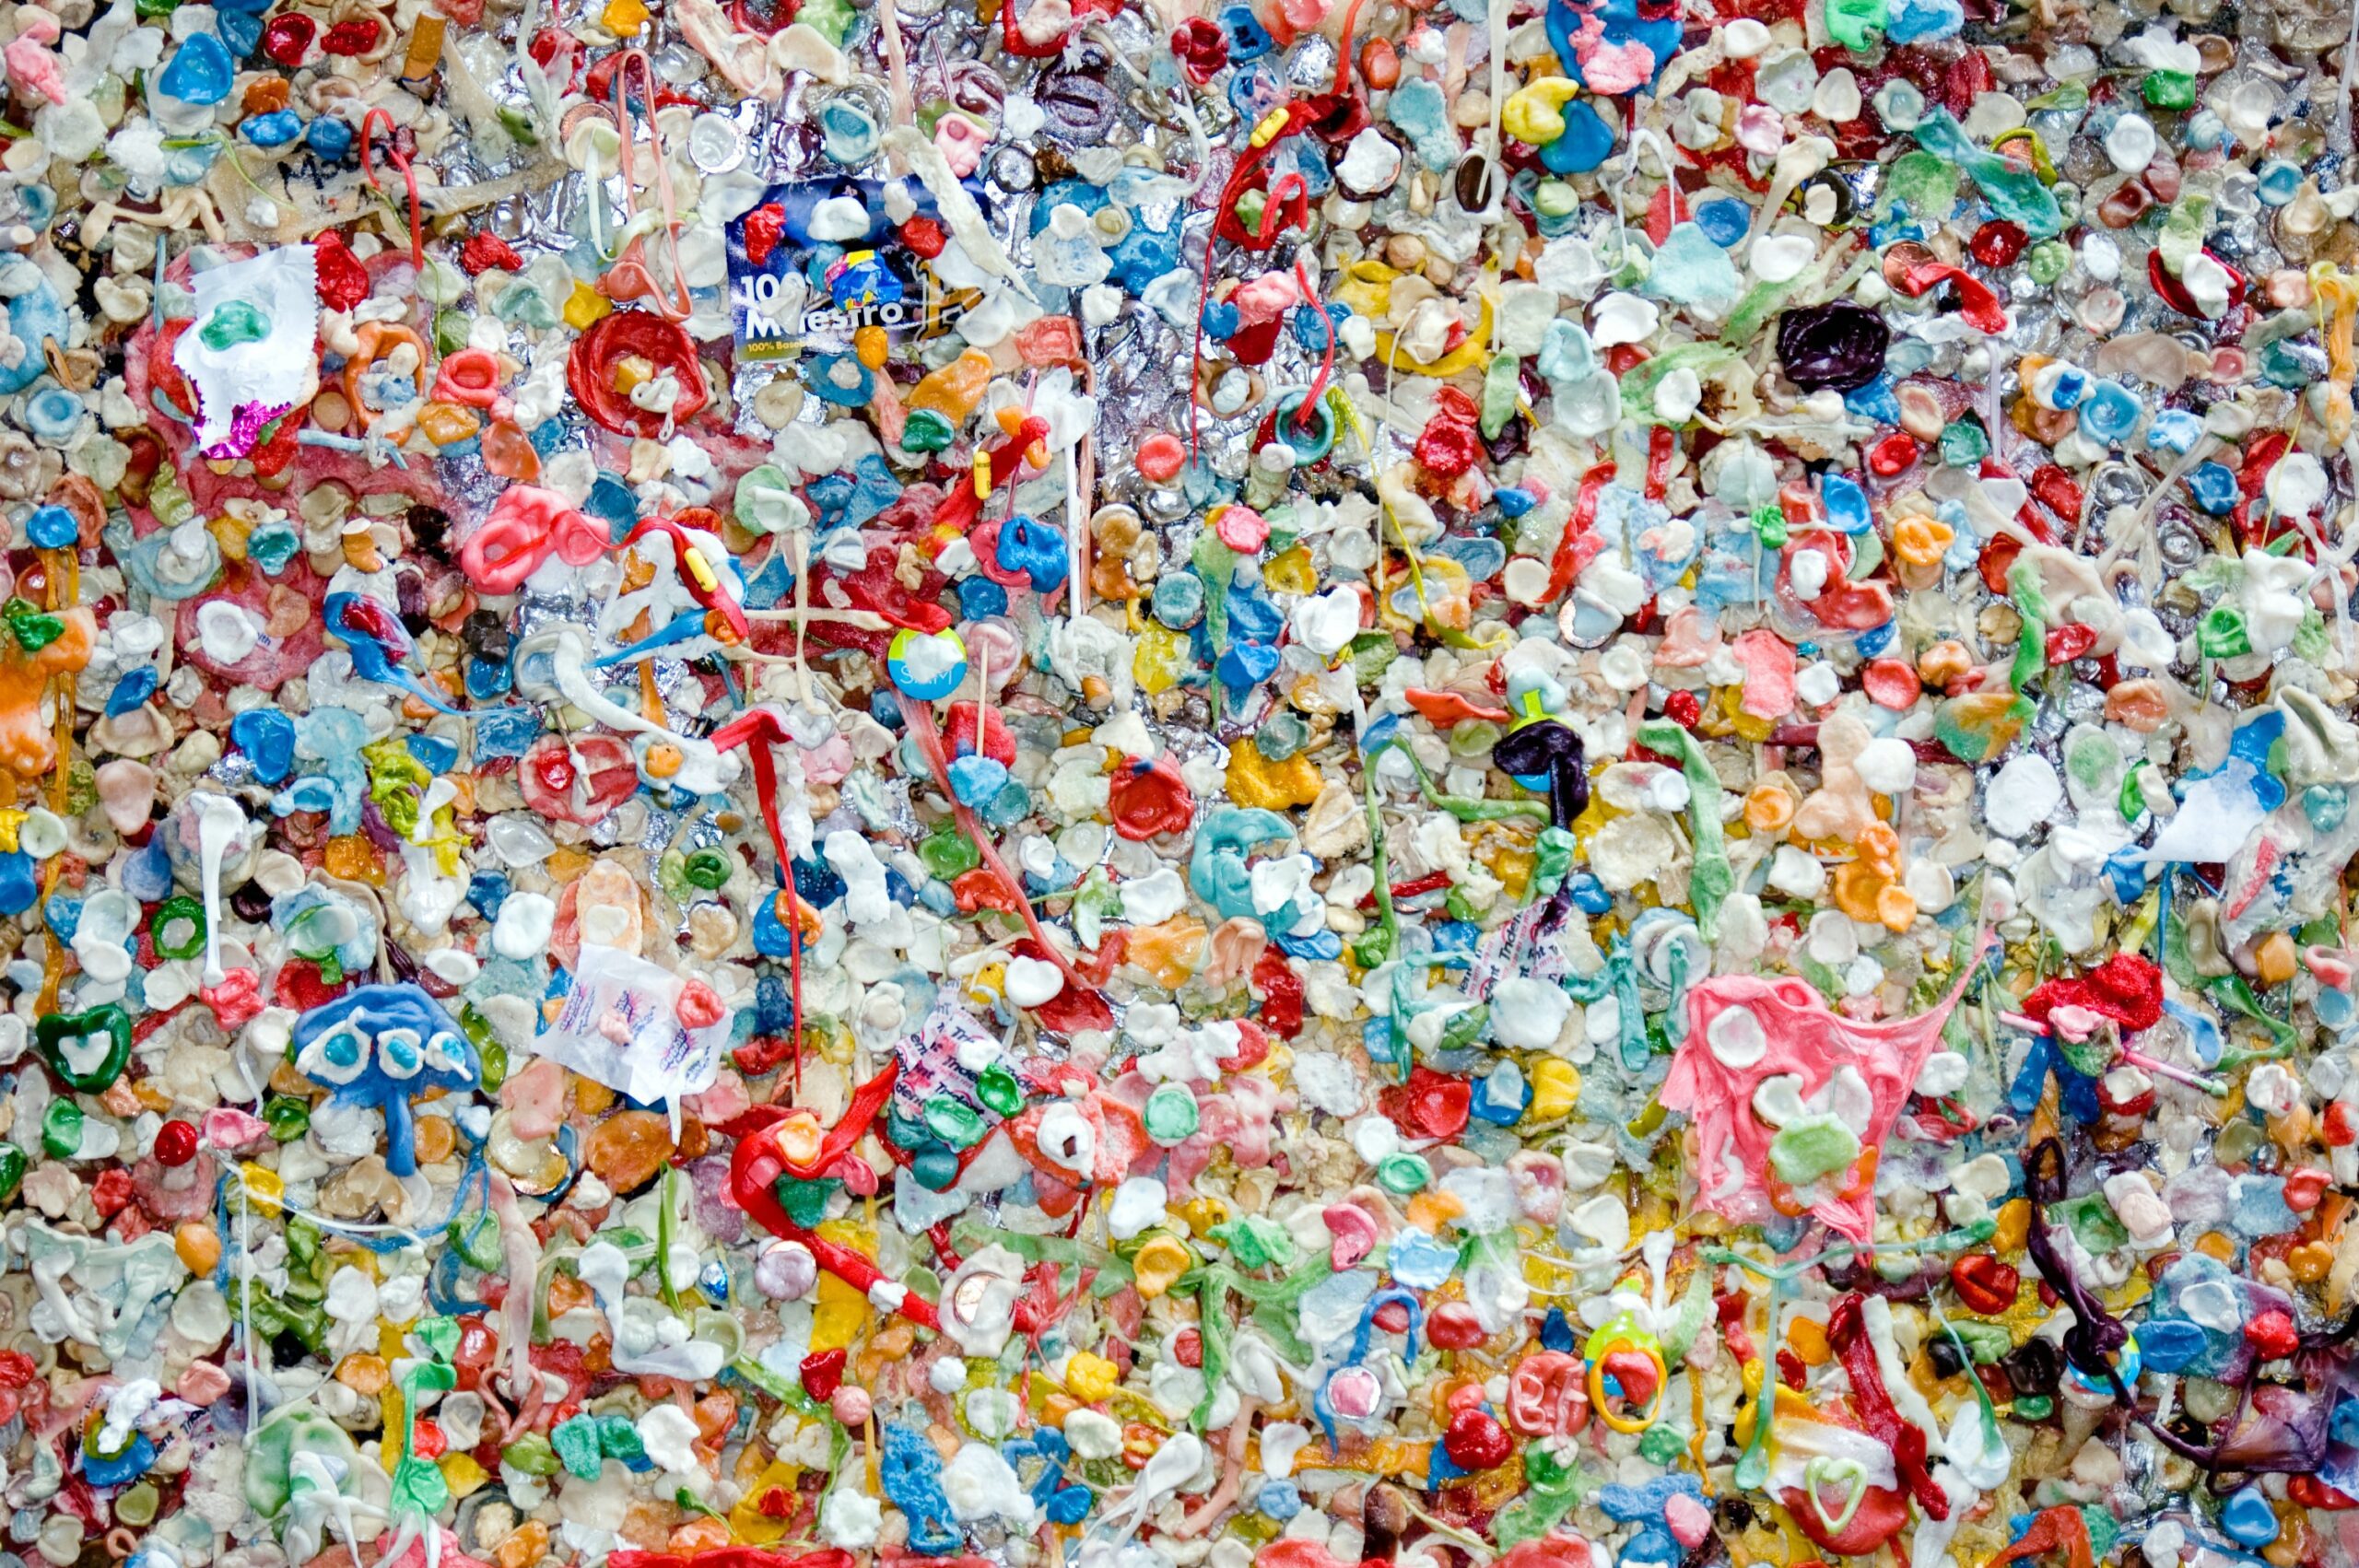 Inquinamento da plastiche: la natura offre soluzioni innovative